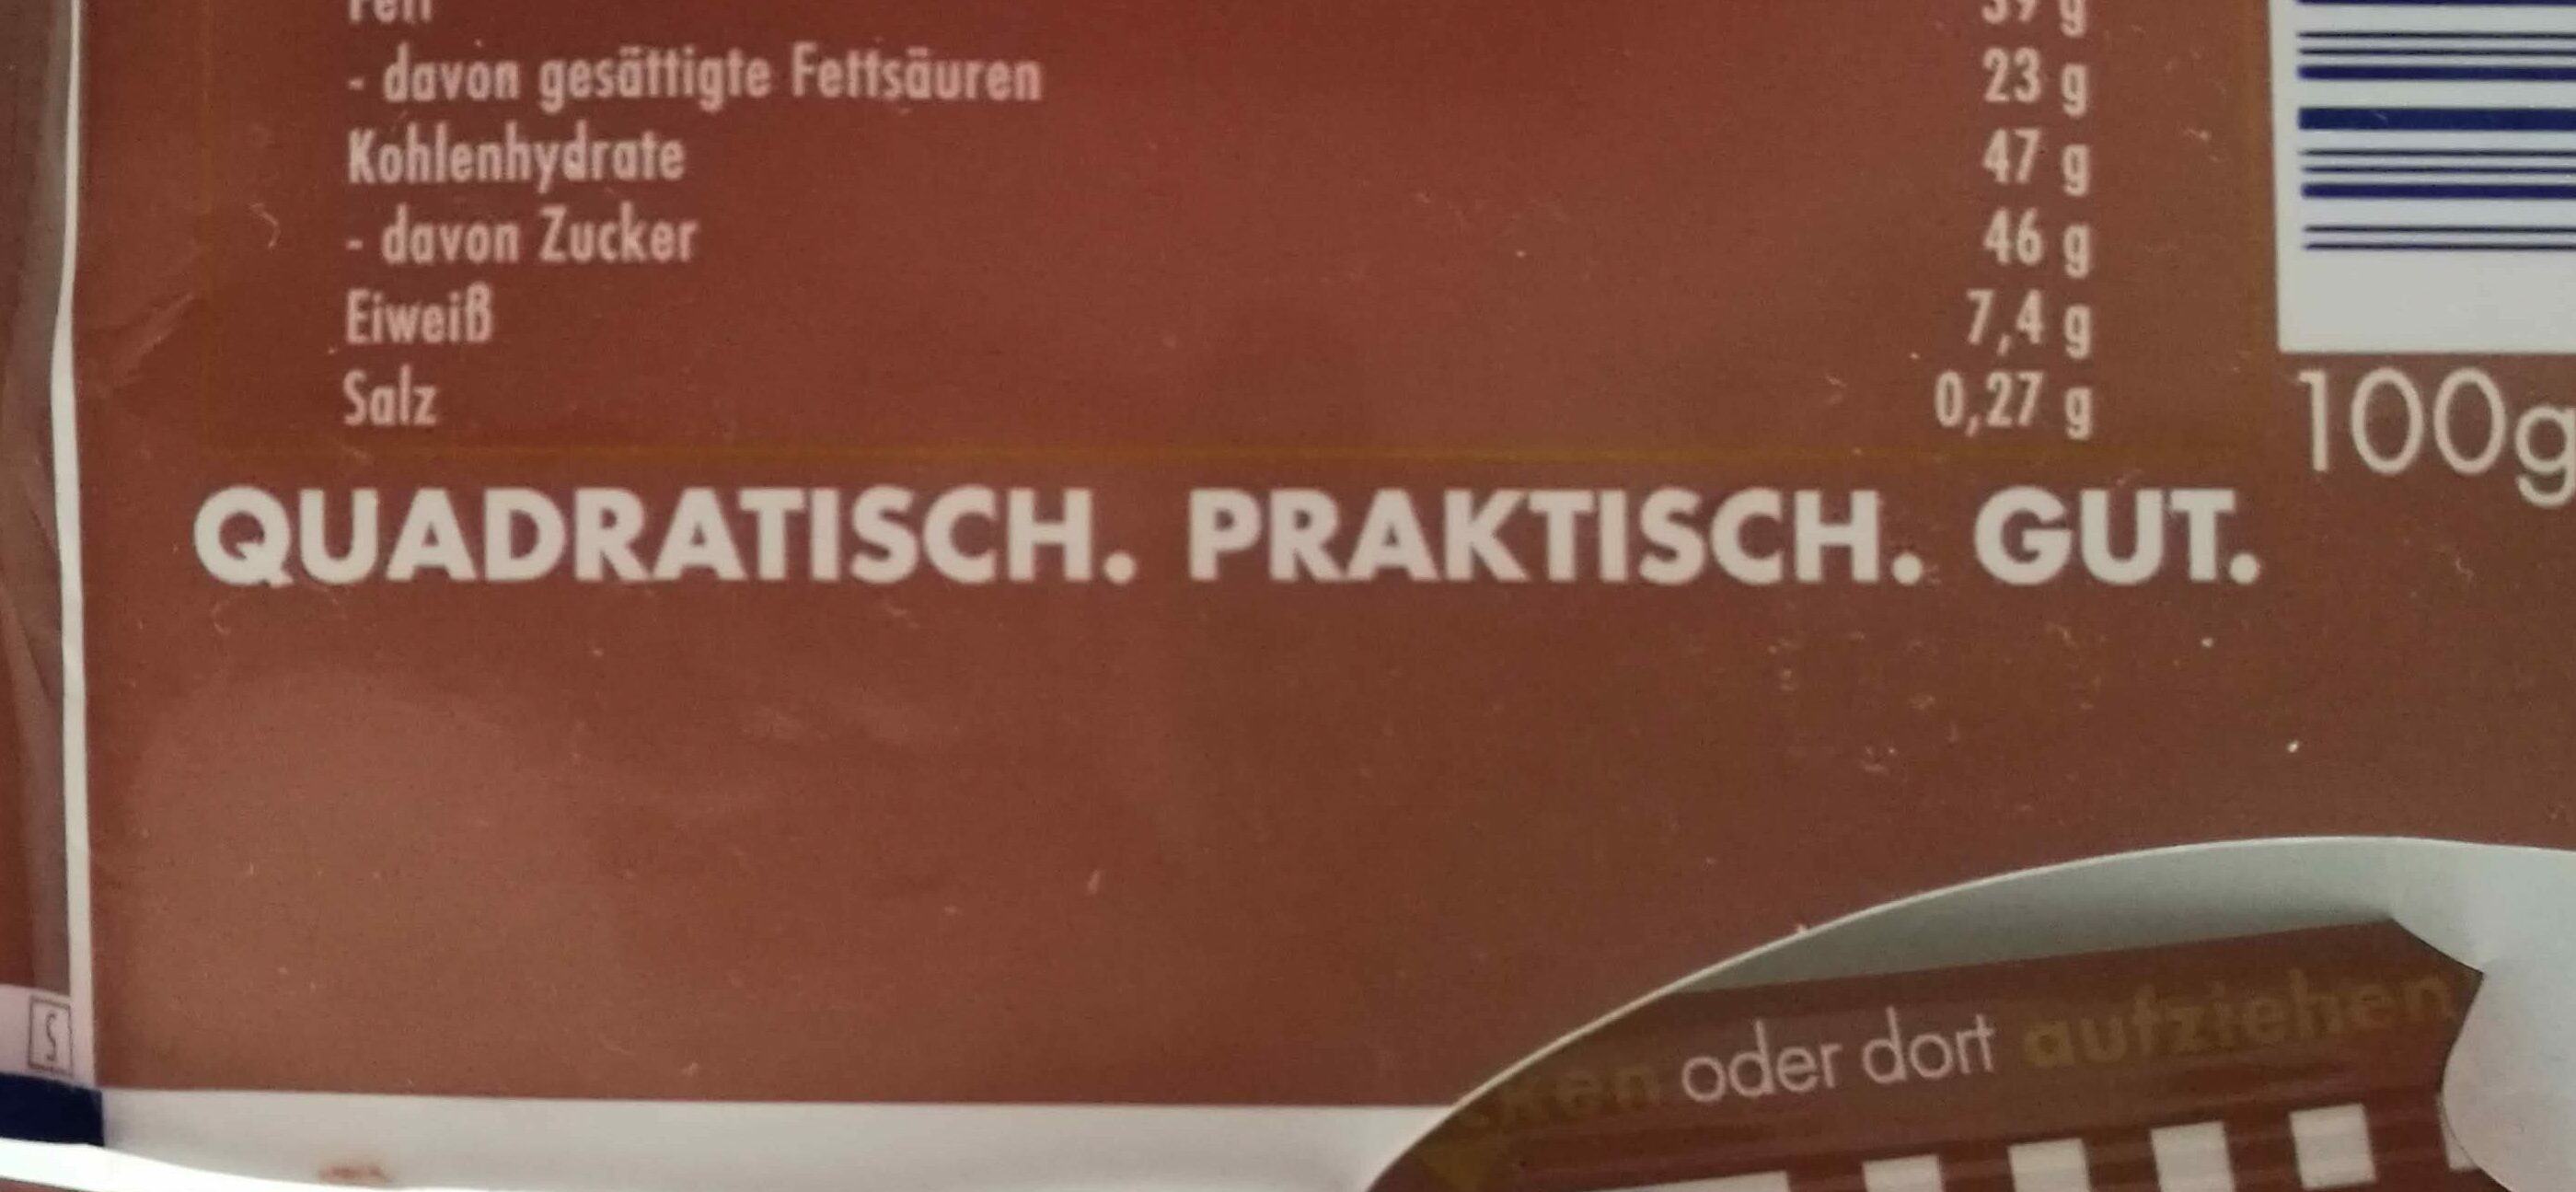 Baksidan av en förpackning choklad av märket Ritter sport. I mitten syns deras retoriskt fantastiska slogan i form av ett tretal: "Quadratich. Praktich. Gut."